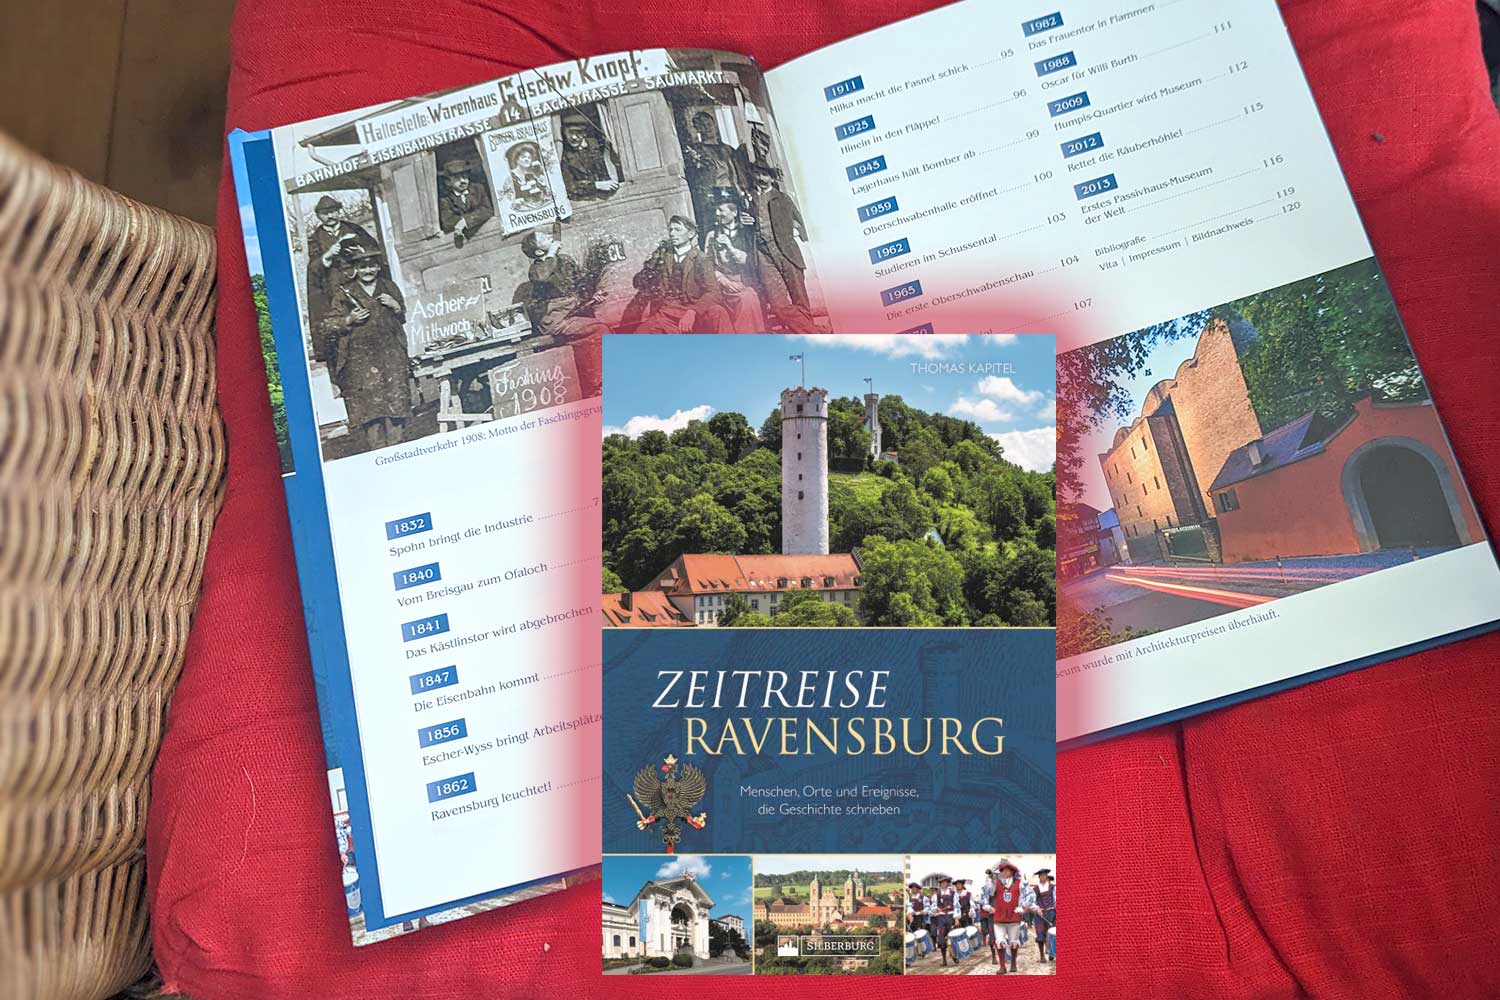 Zeitreise Ravensburg von Thomas Kapitel: Cover und Layout